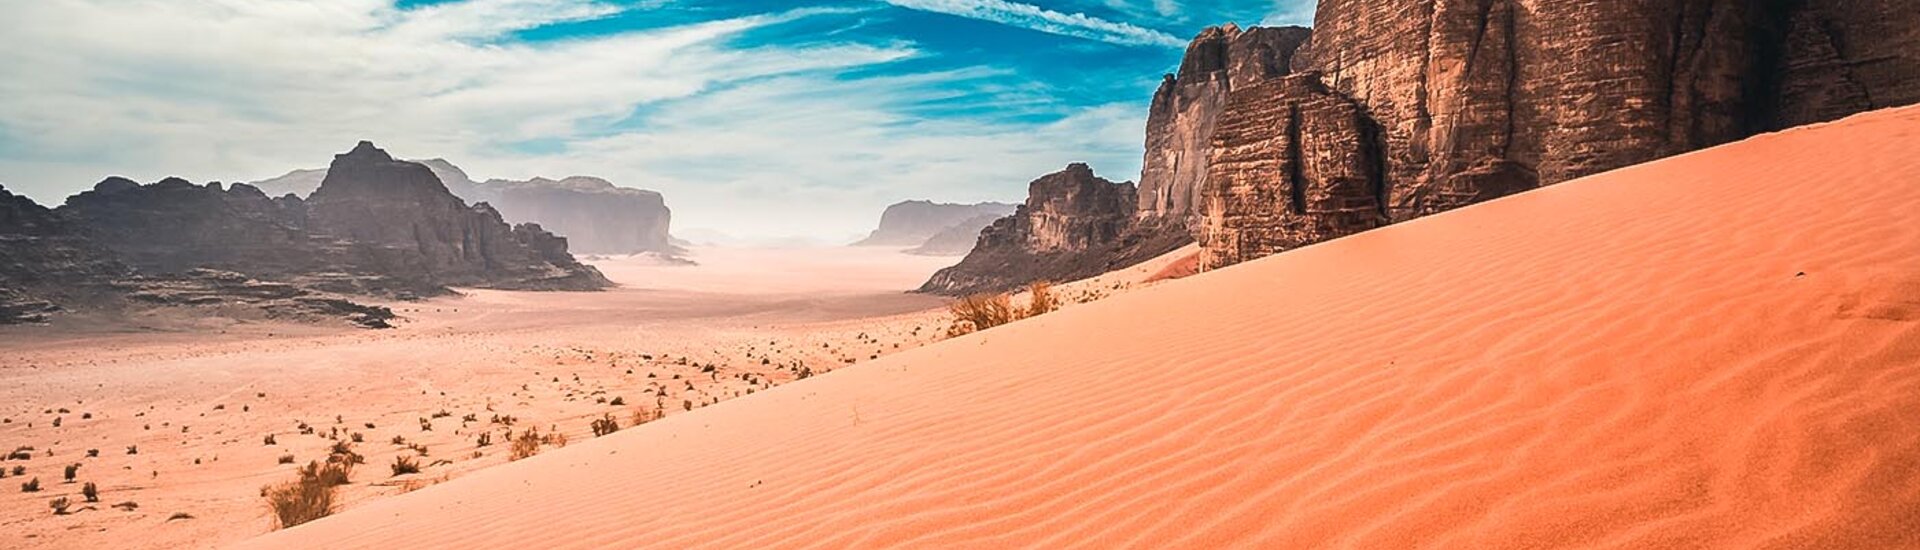 Sanddünen in der Wüste Wadi Rum